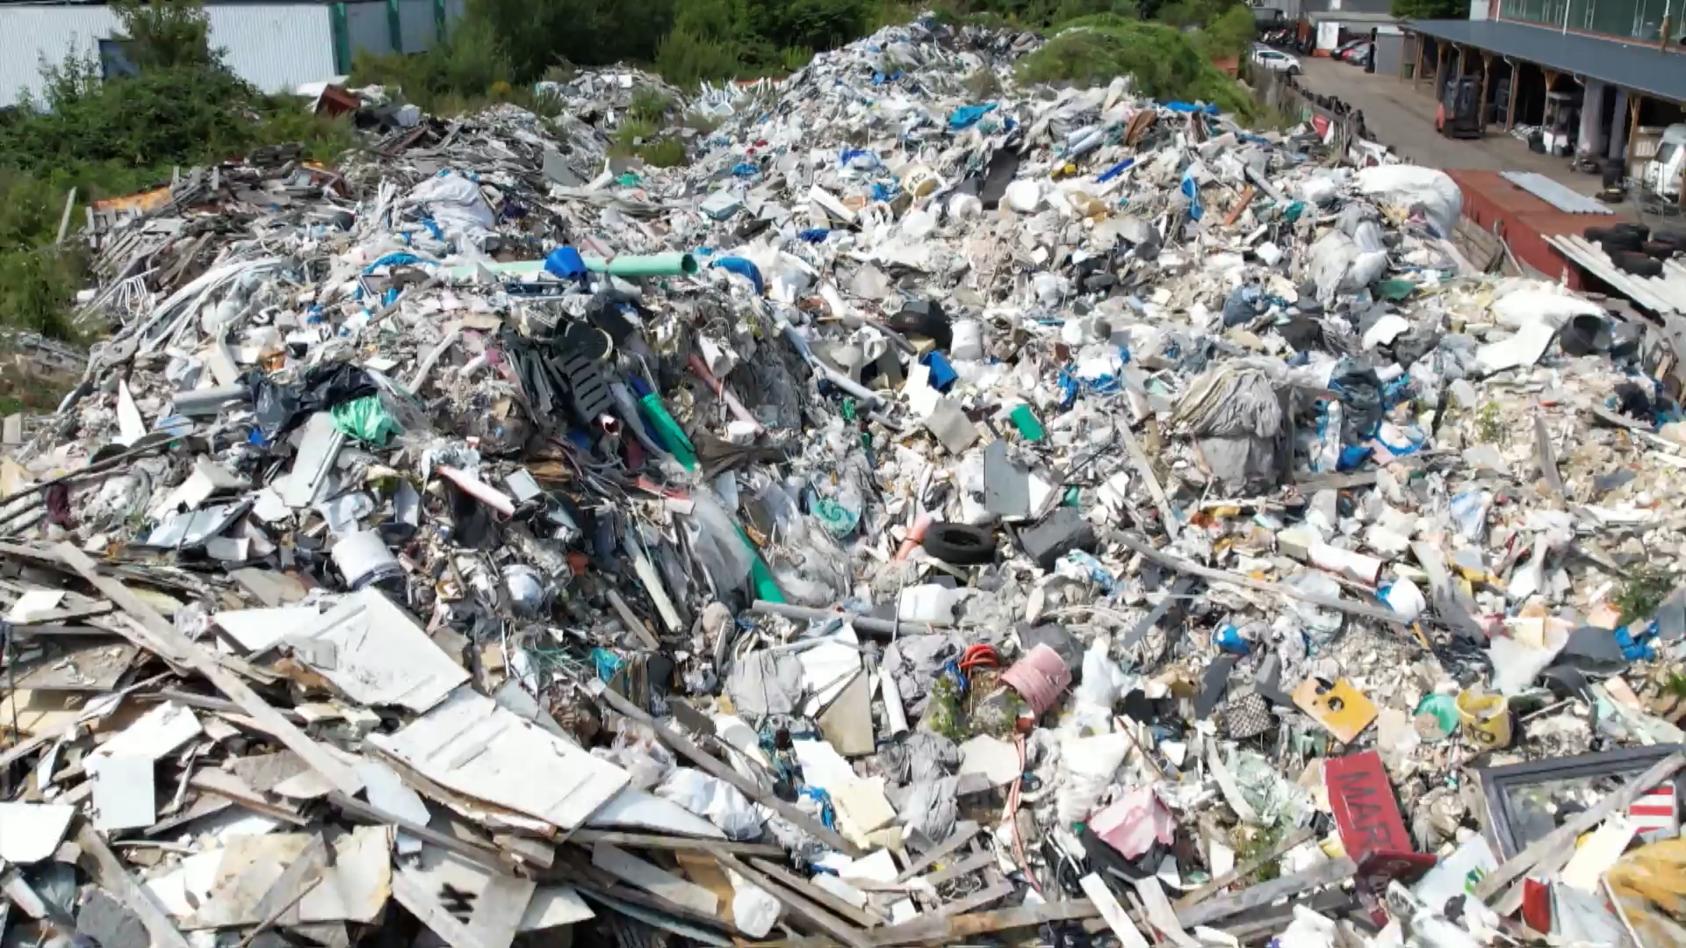 Der Giftberg soll jetzt geräumt werden Müll-Skandal in Norderstedt